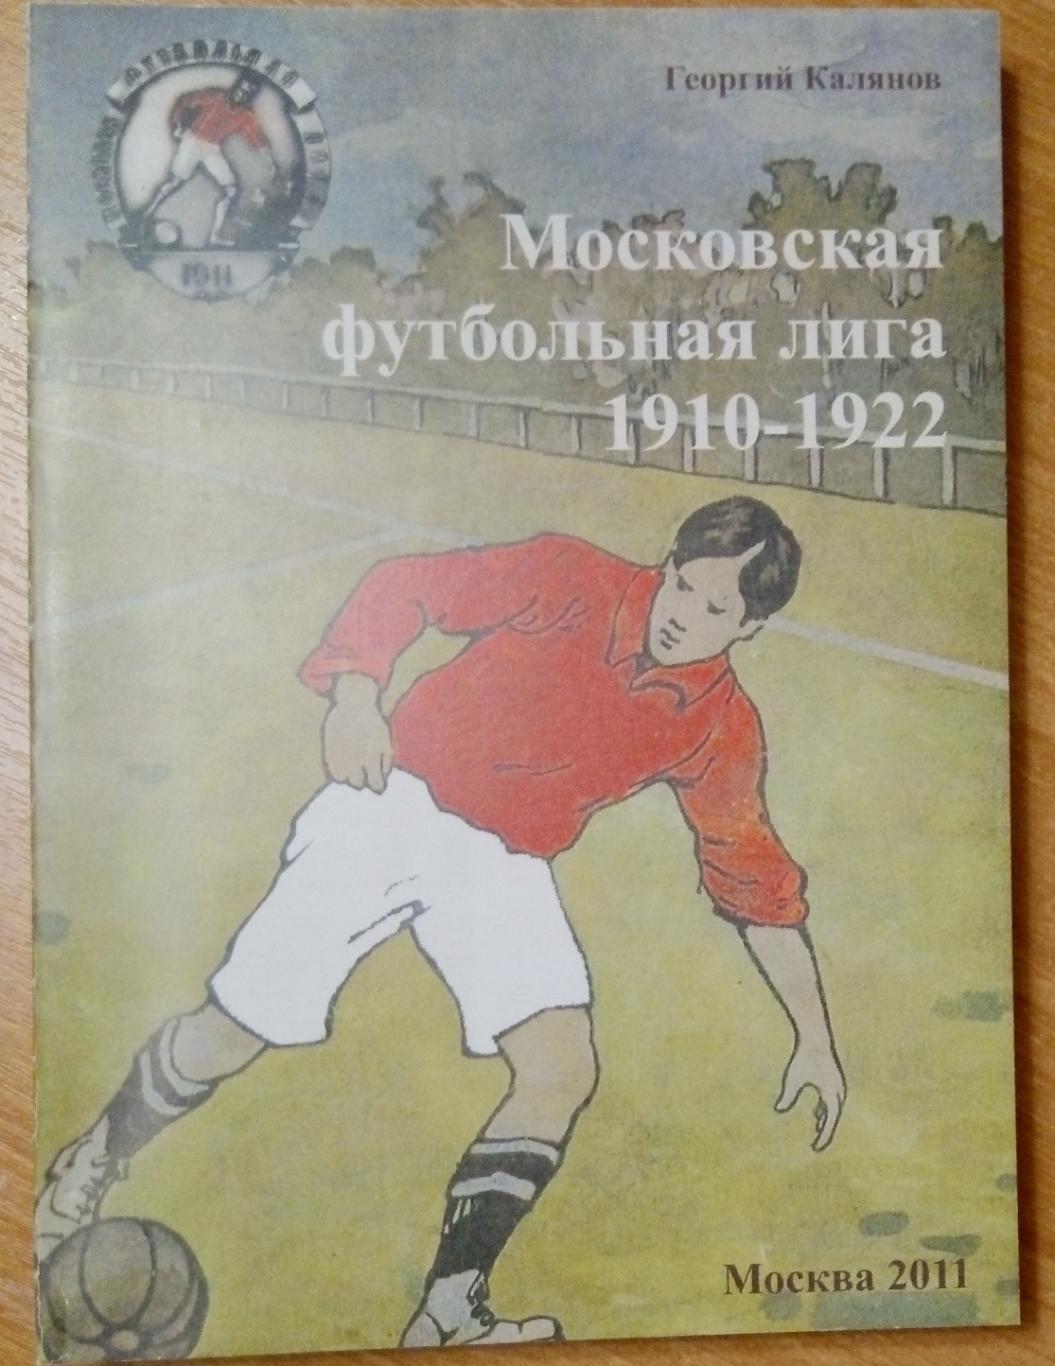 справочник Московская футбольная лига 1910-1922